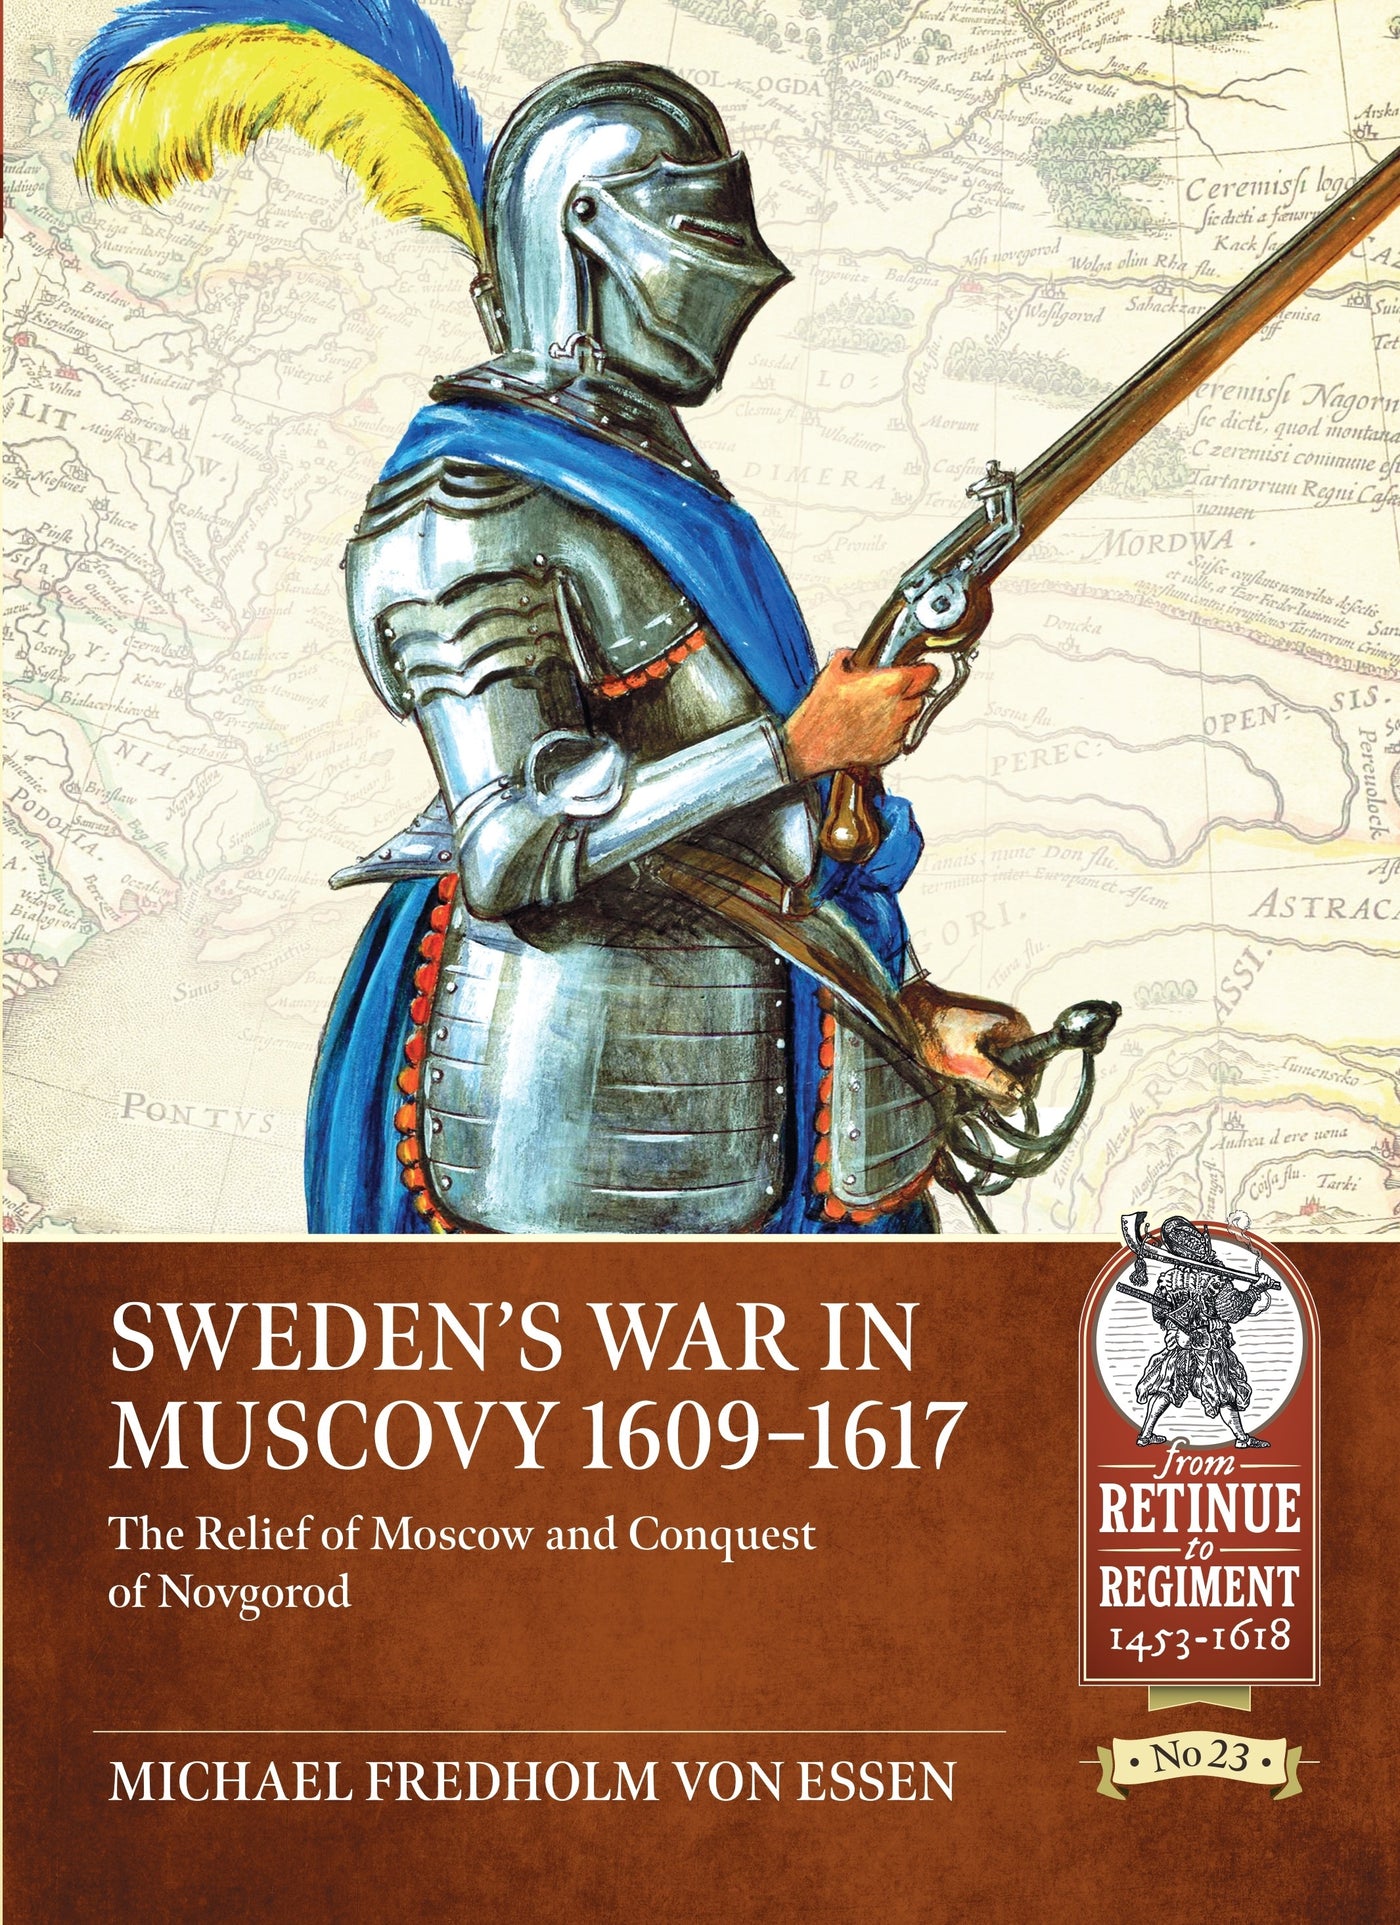 Sweden’s War in Muscovy 1609-1617